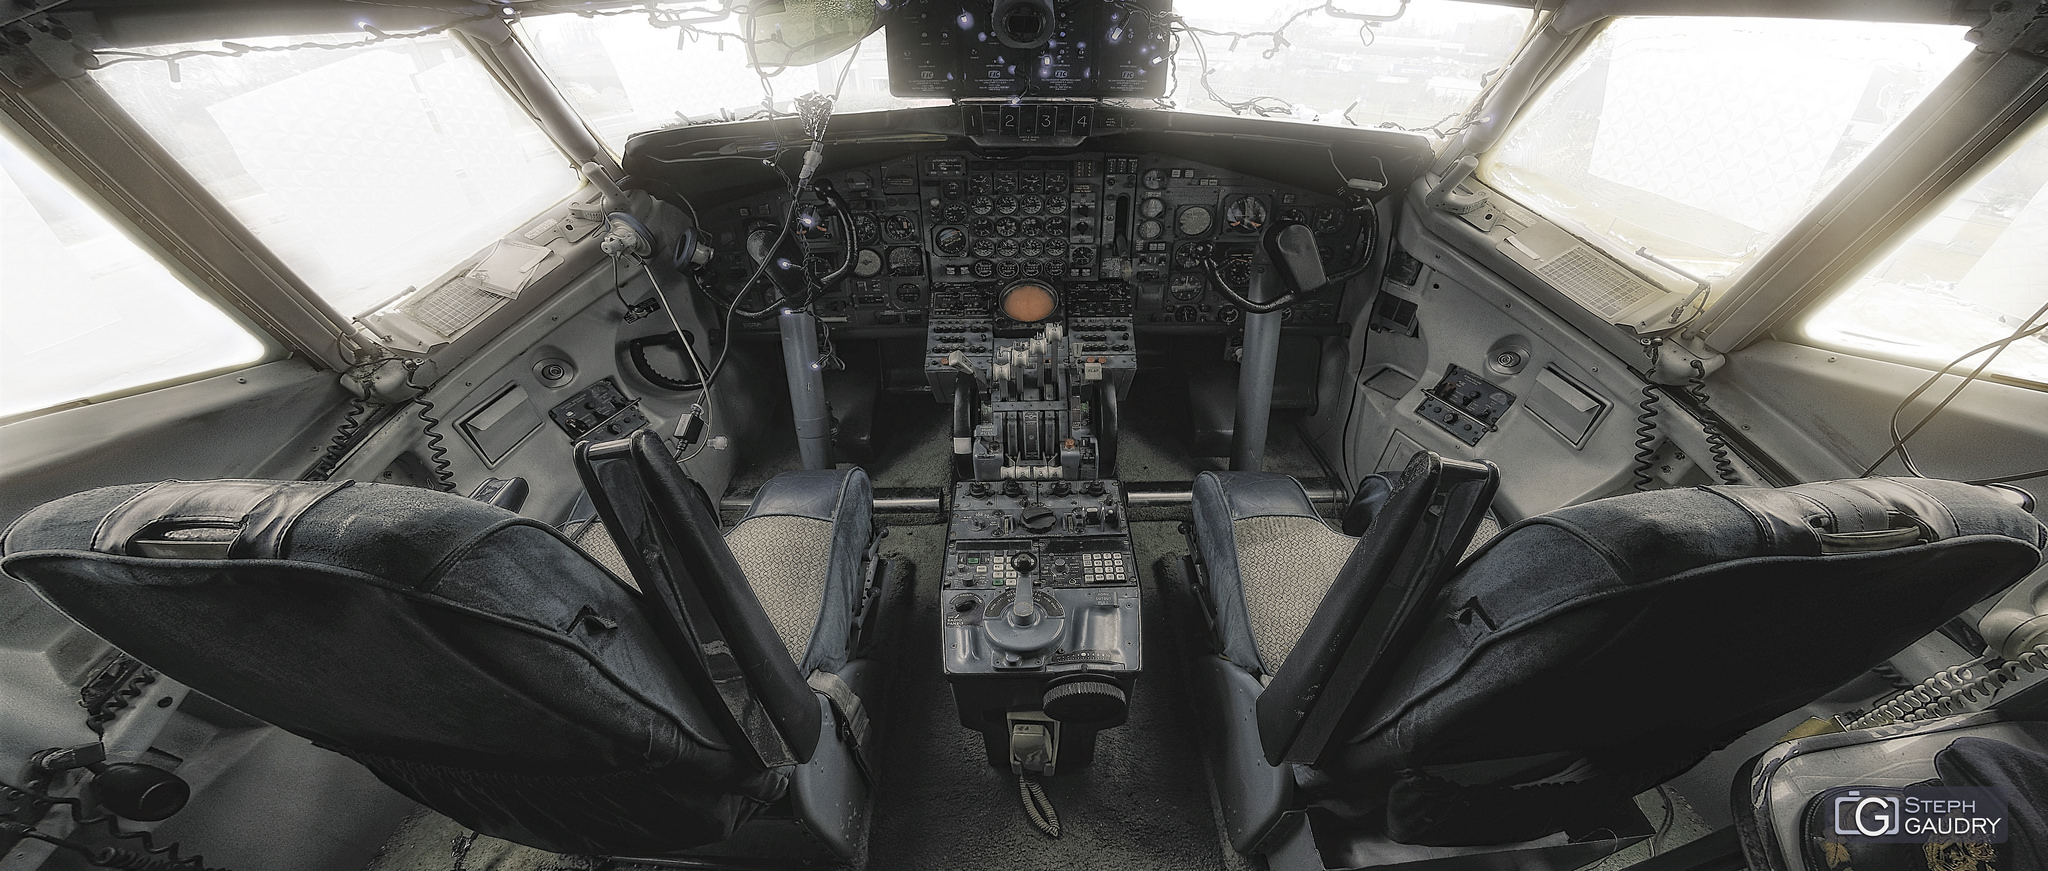 Cockpit Boeing 707 - Flat colored version [Klicken Sie hier, um die Diashow zu starten]